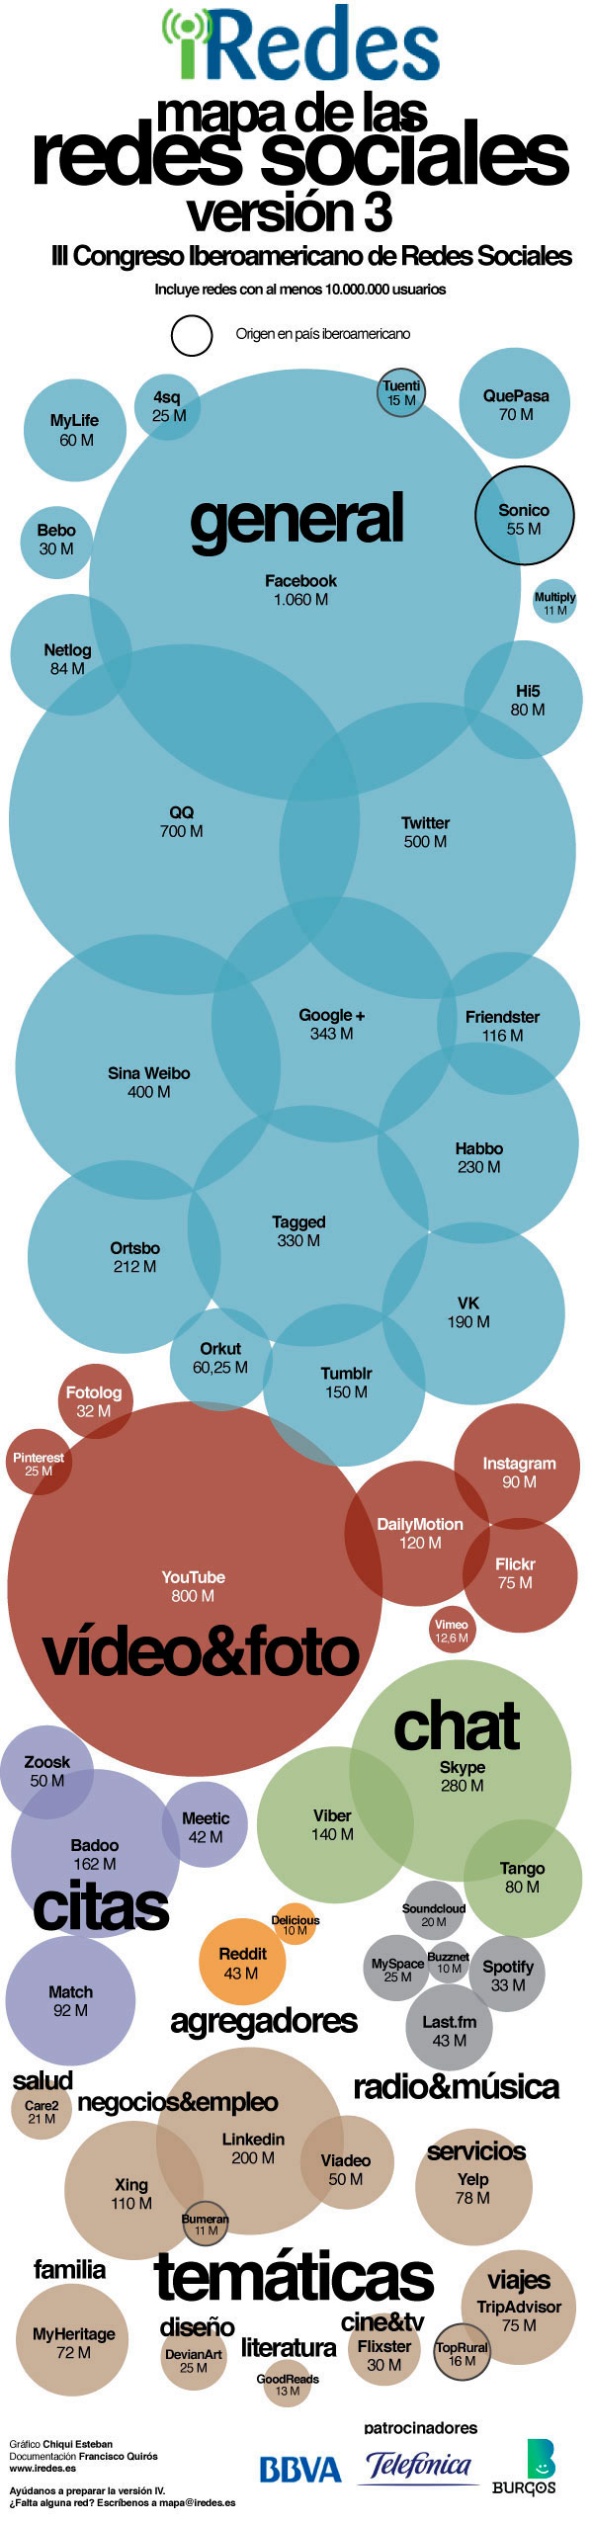 Mapa de Redes Sociales según número de usuarios